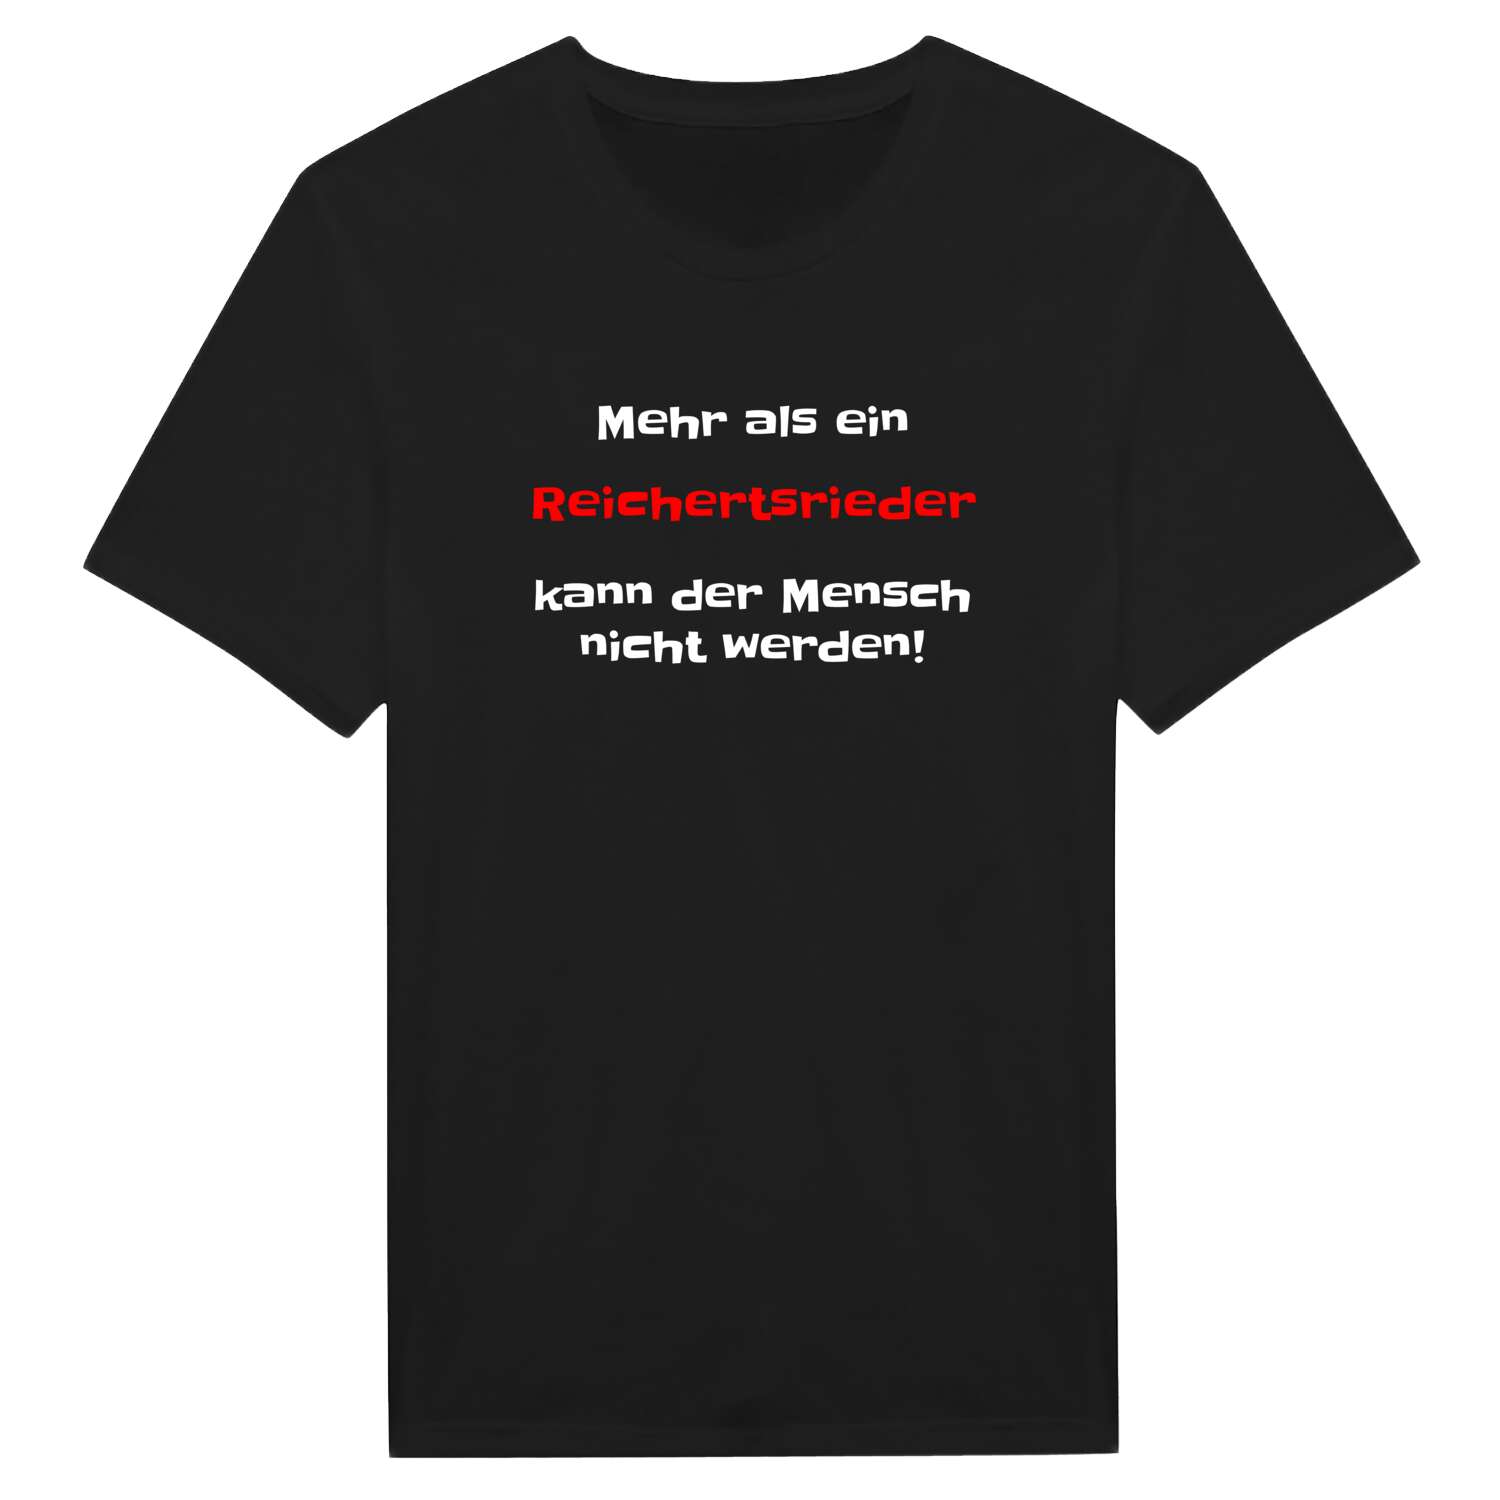 Reichertsried T-Shirt »Mehr als ein«